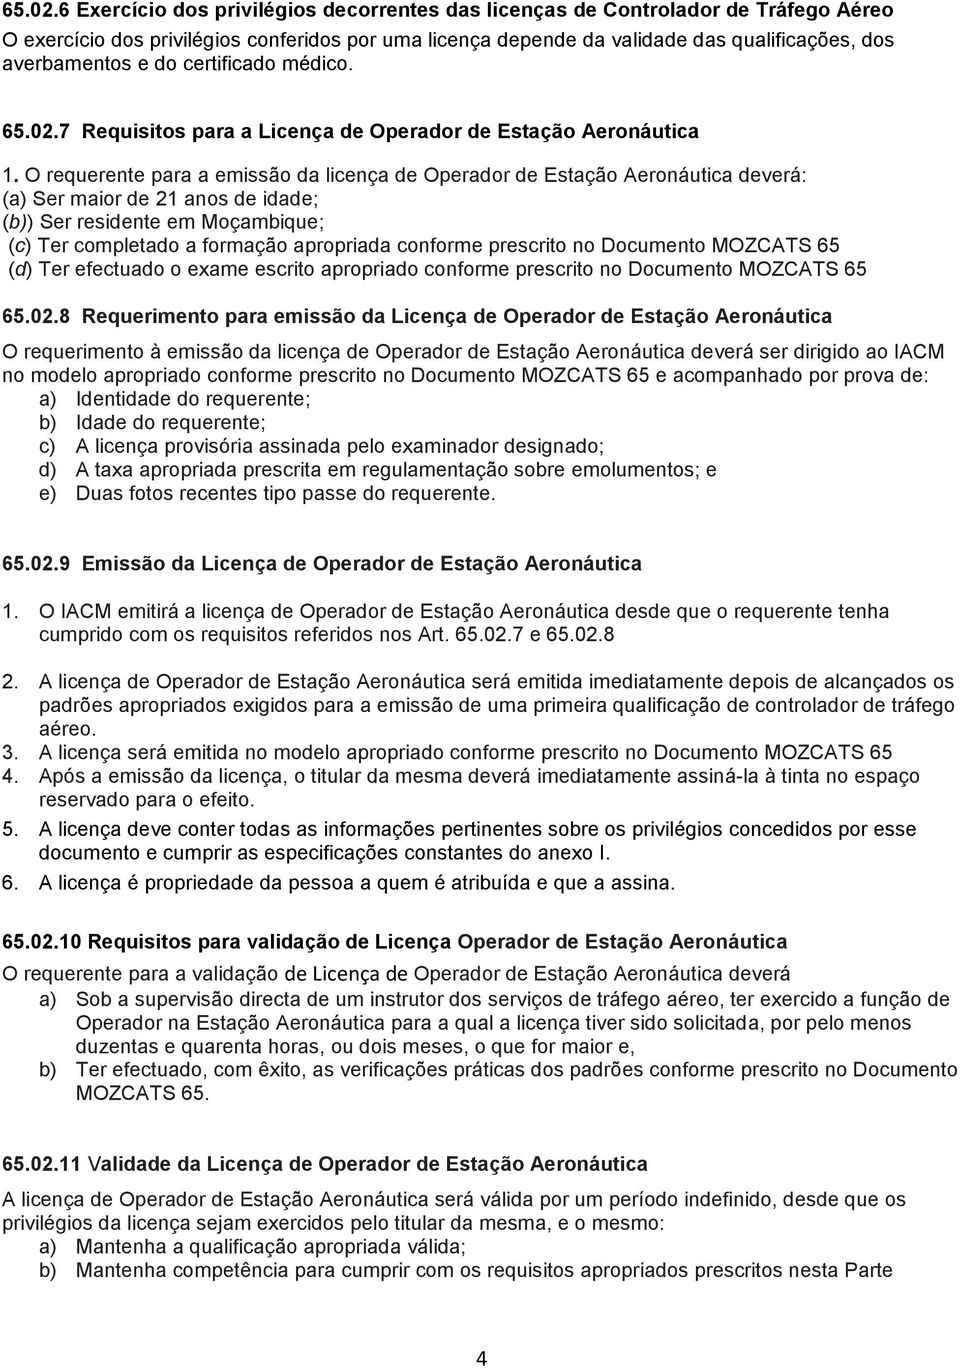 do certificado médico. 7 Requisitos para a Licença de Operador de Estação Aeronáutica 1.